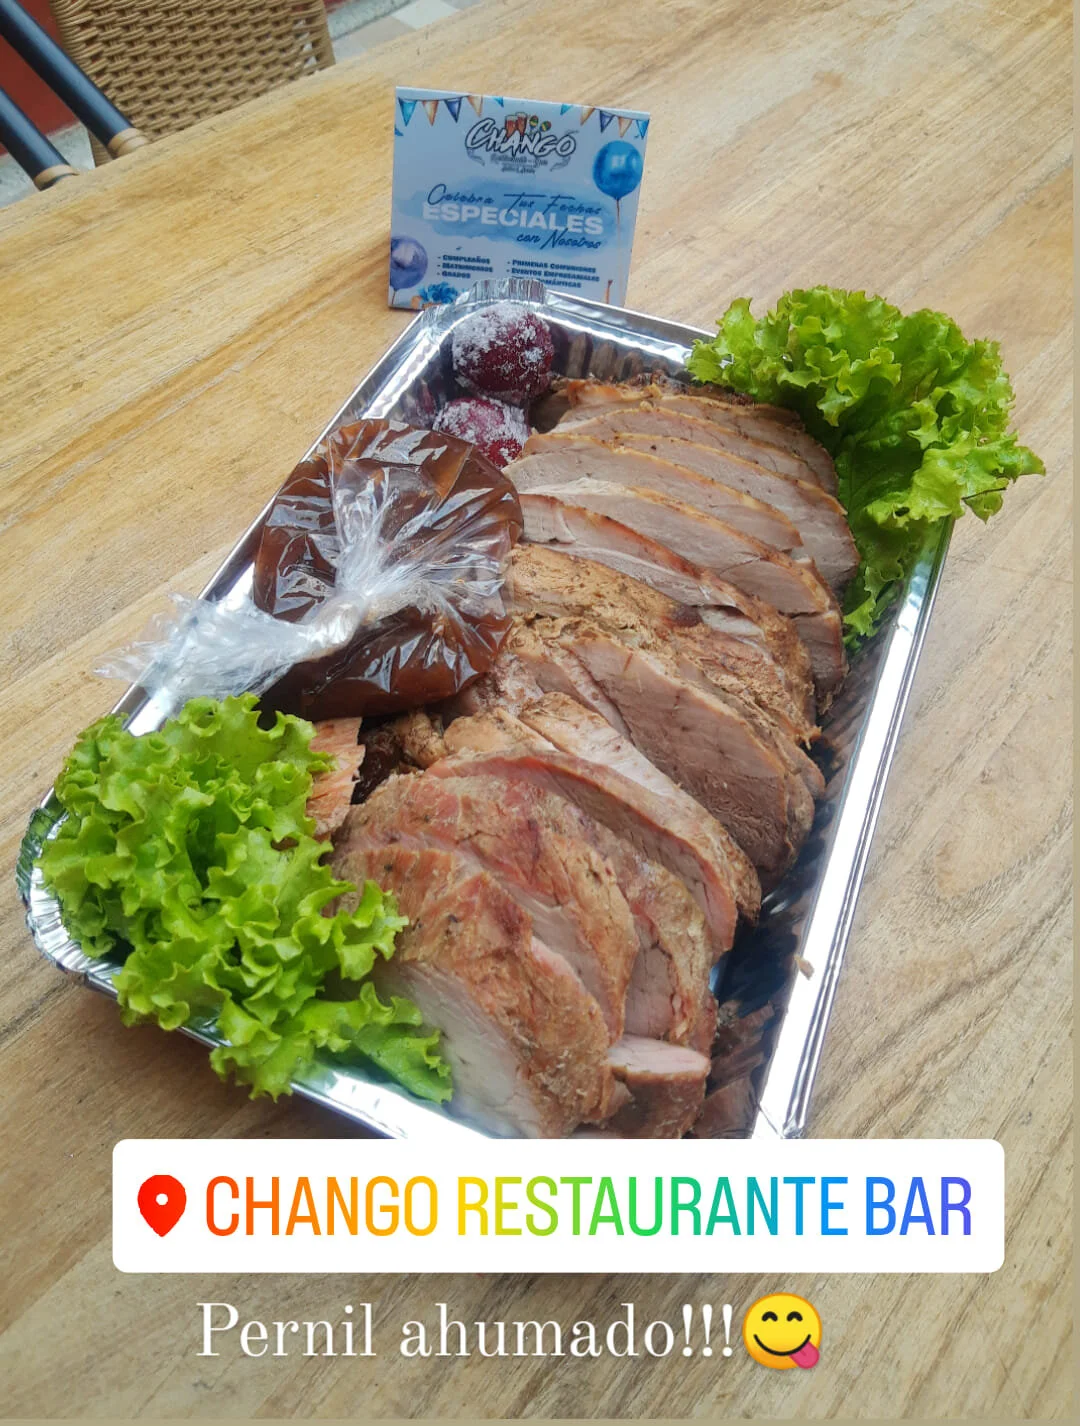 Restaurante-chango-restaurante-bar-manizales-22013